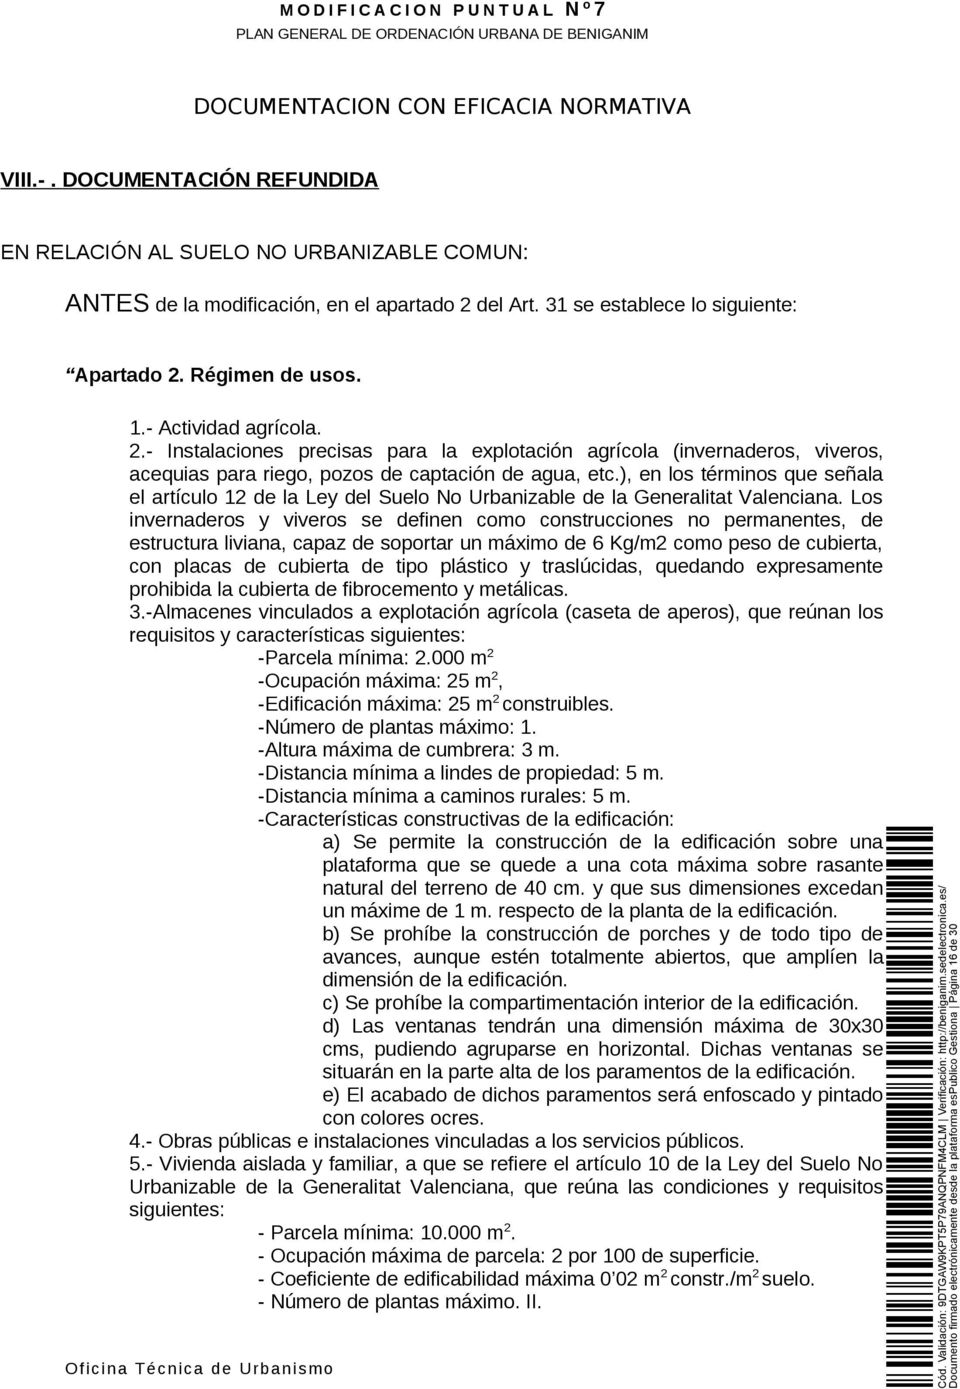 ), en los términos que señala el artículo 12 de la Ley del Suelo No Urbanizable de la Generalitat Valenciana.